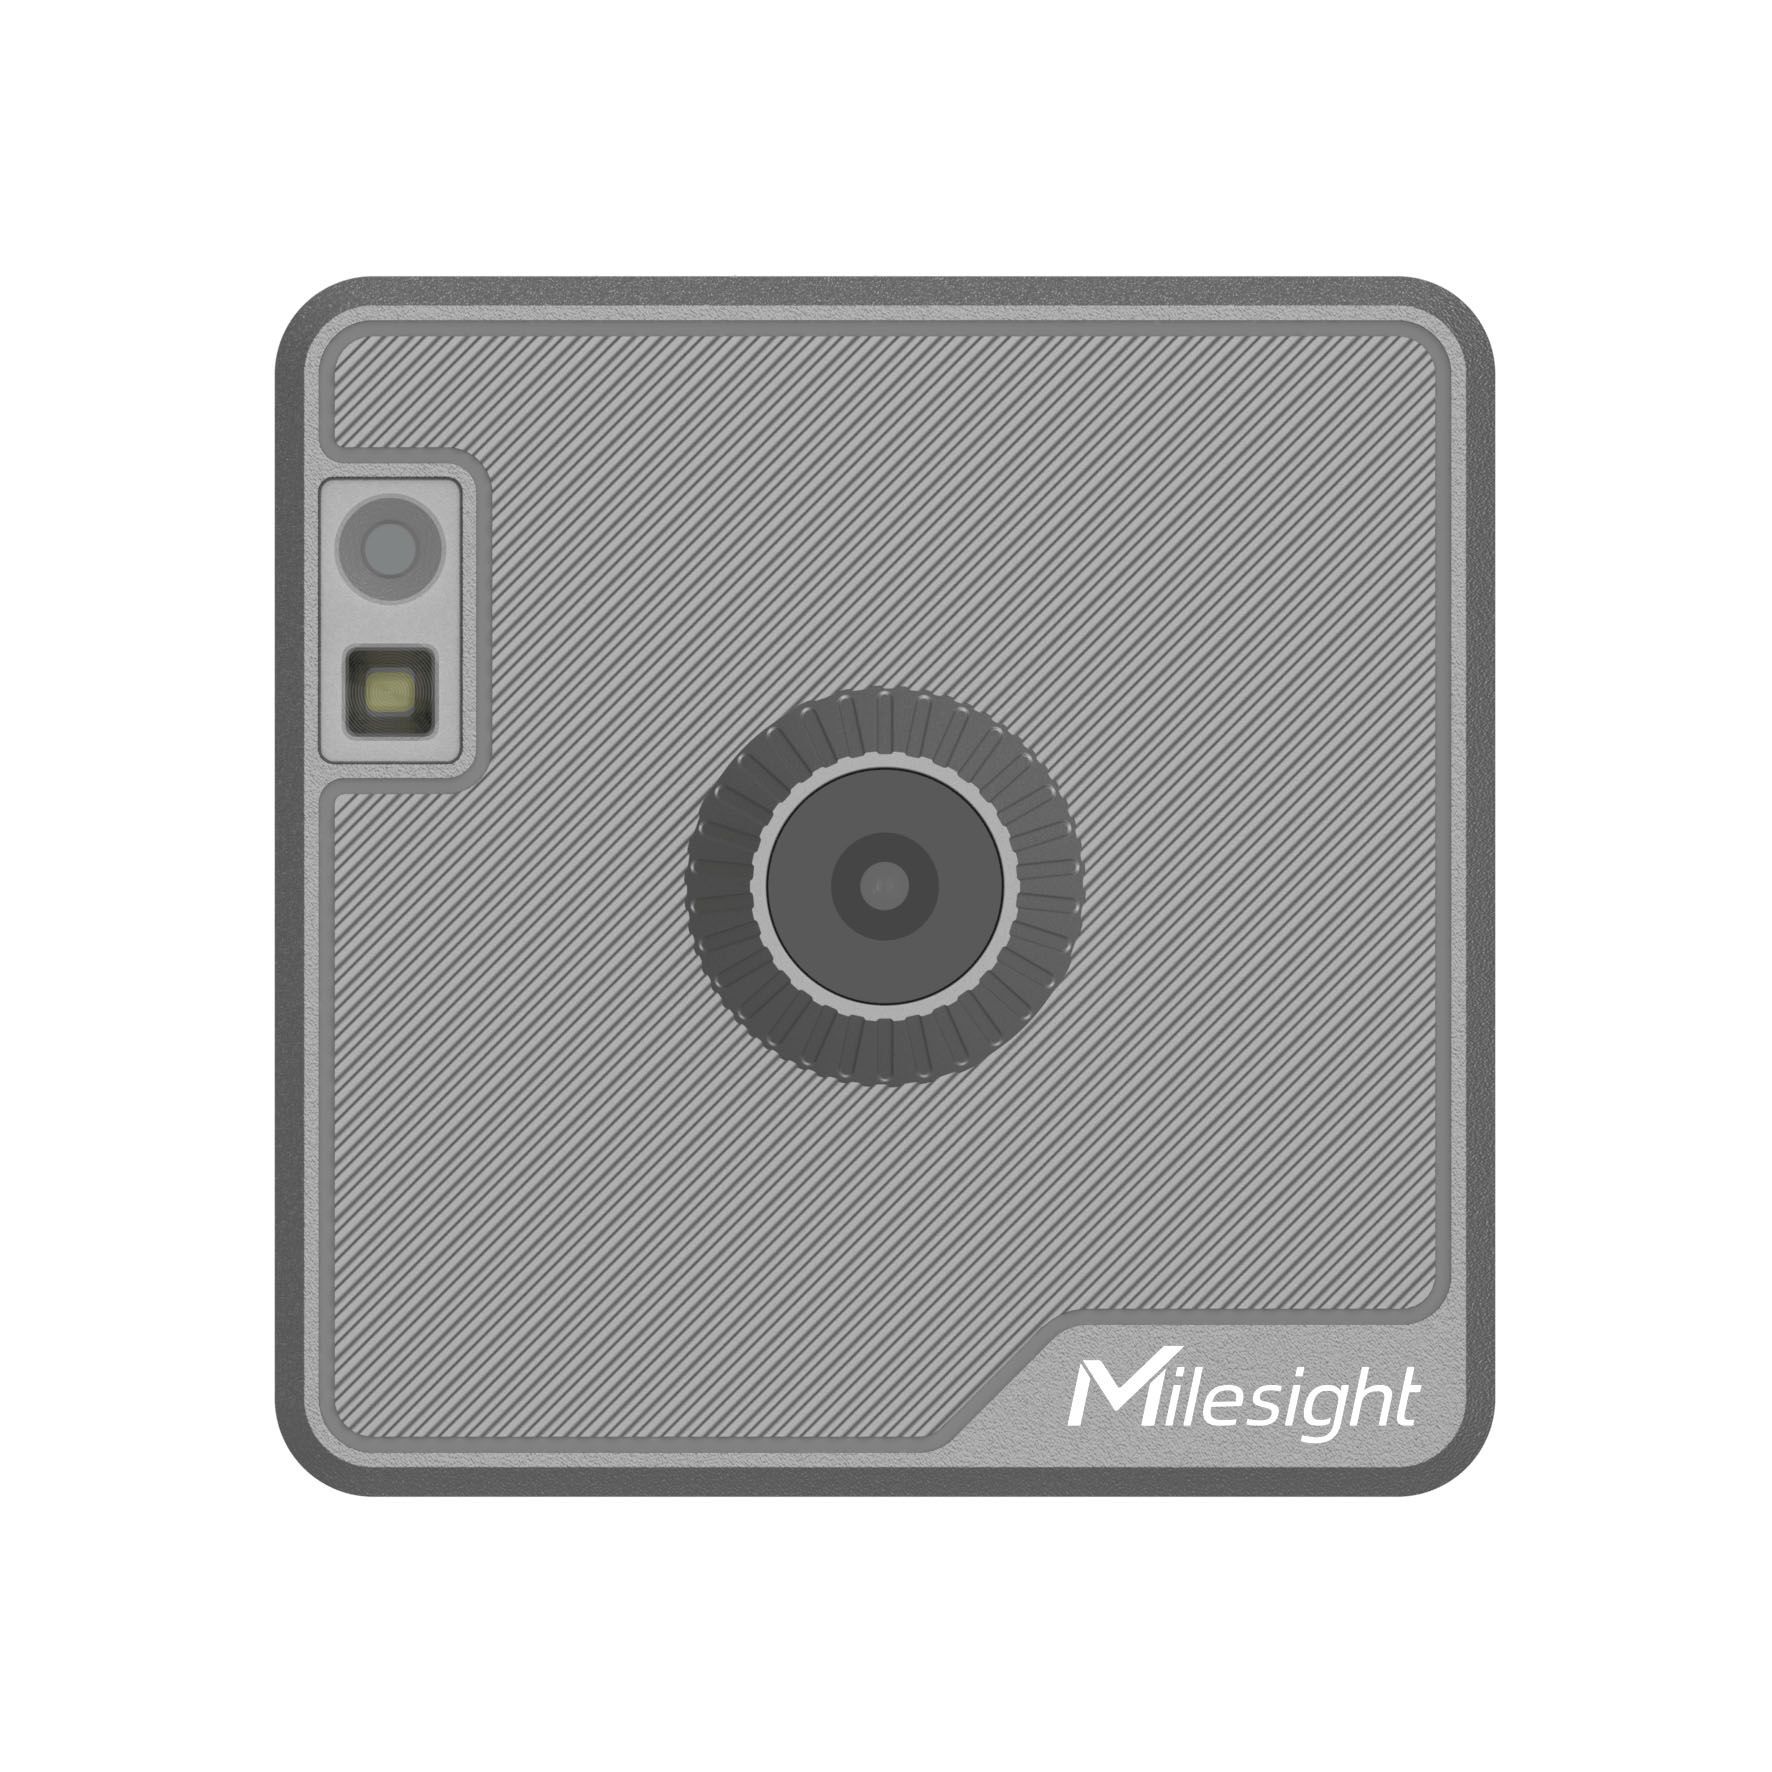 SC541-0510 AIoT Wi-Fi MQTT kamera pro inspekční snímaní